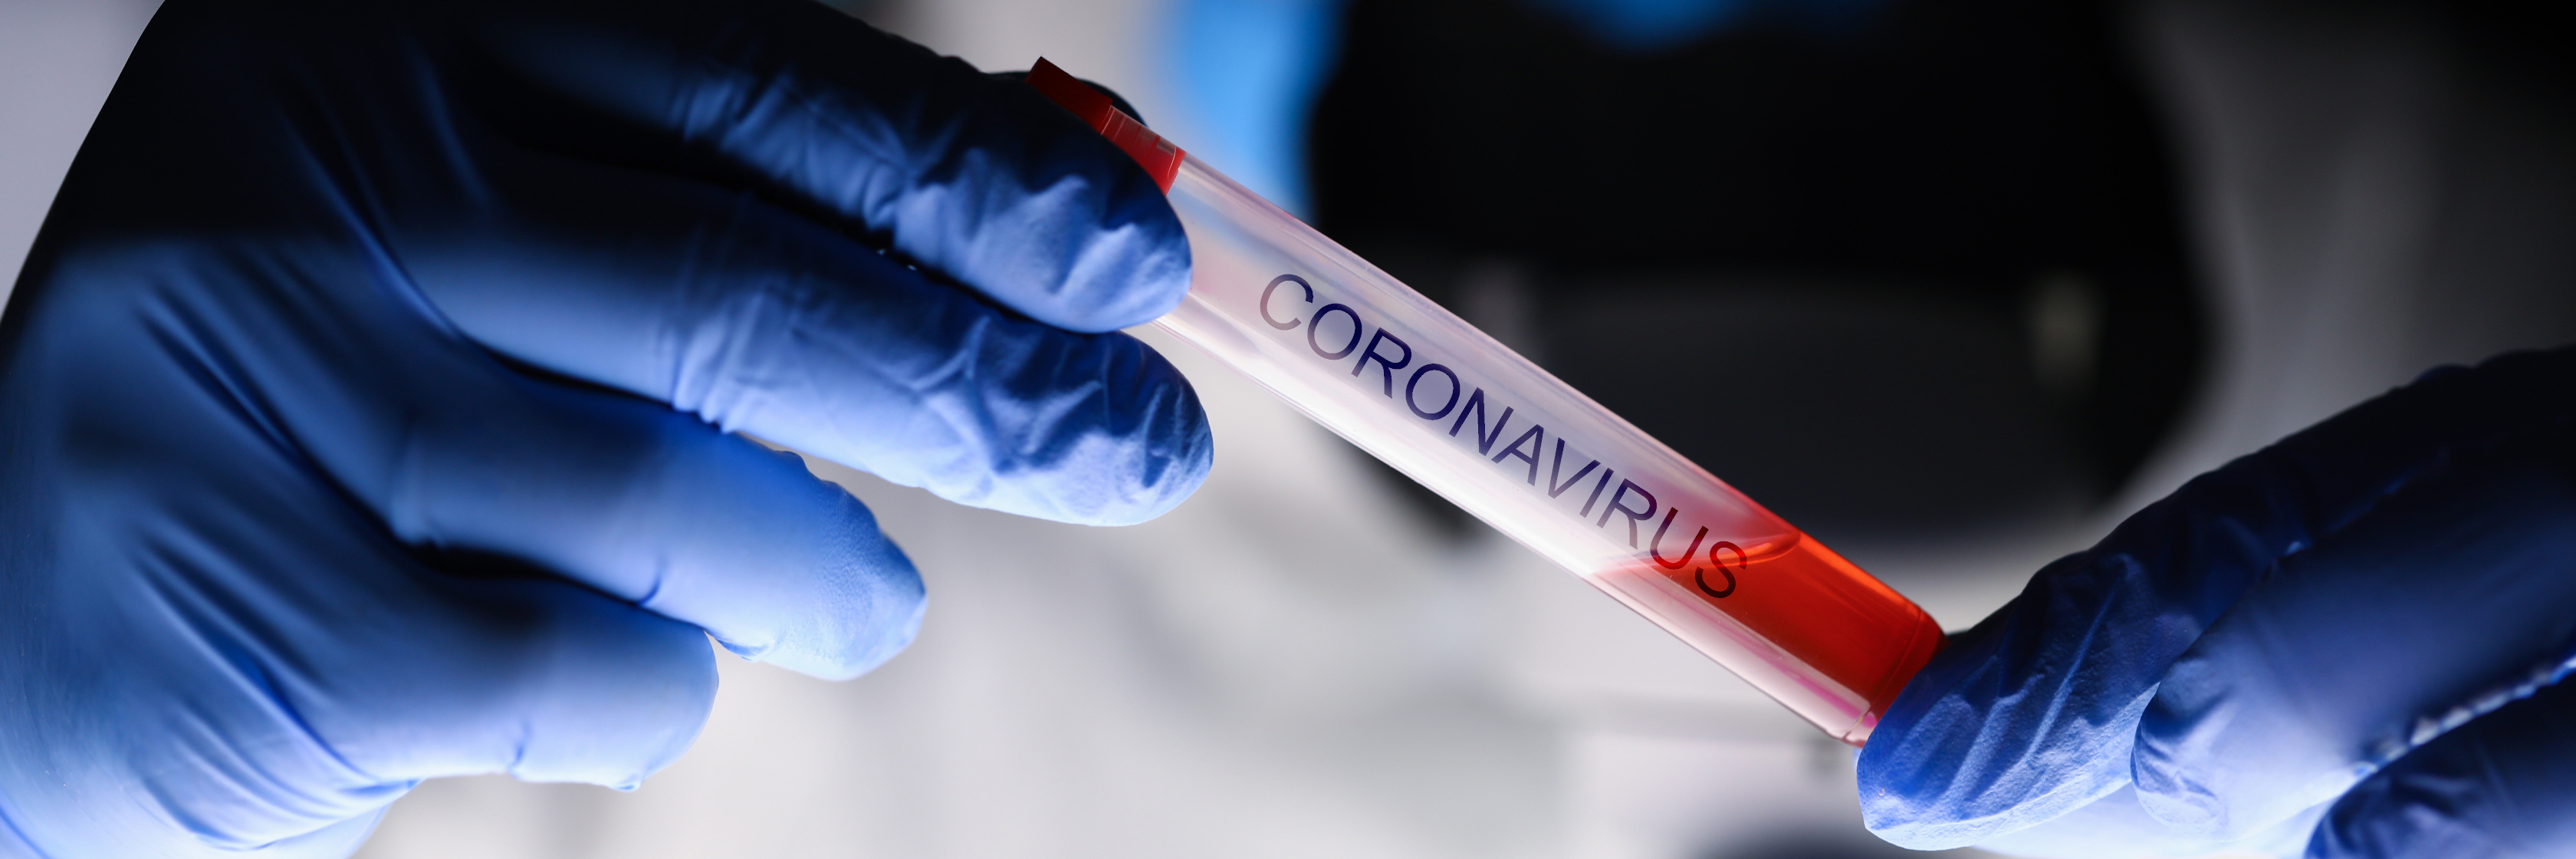 Coronavirus Adobe Stock